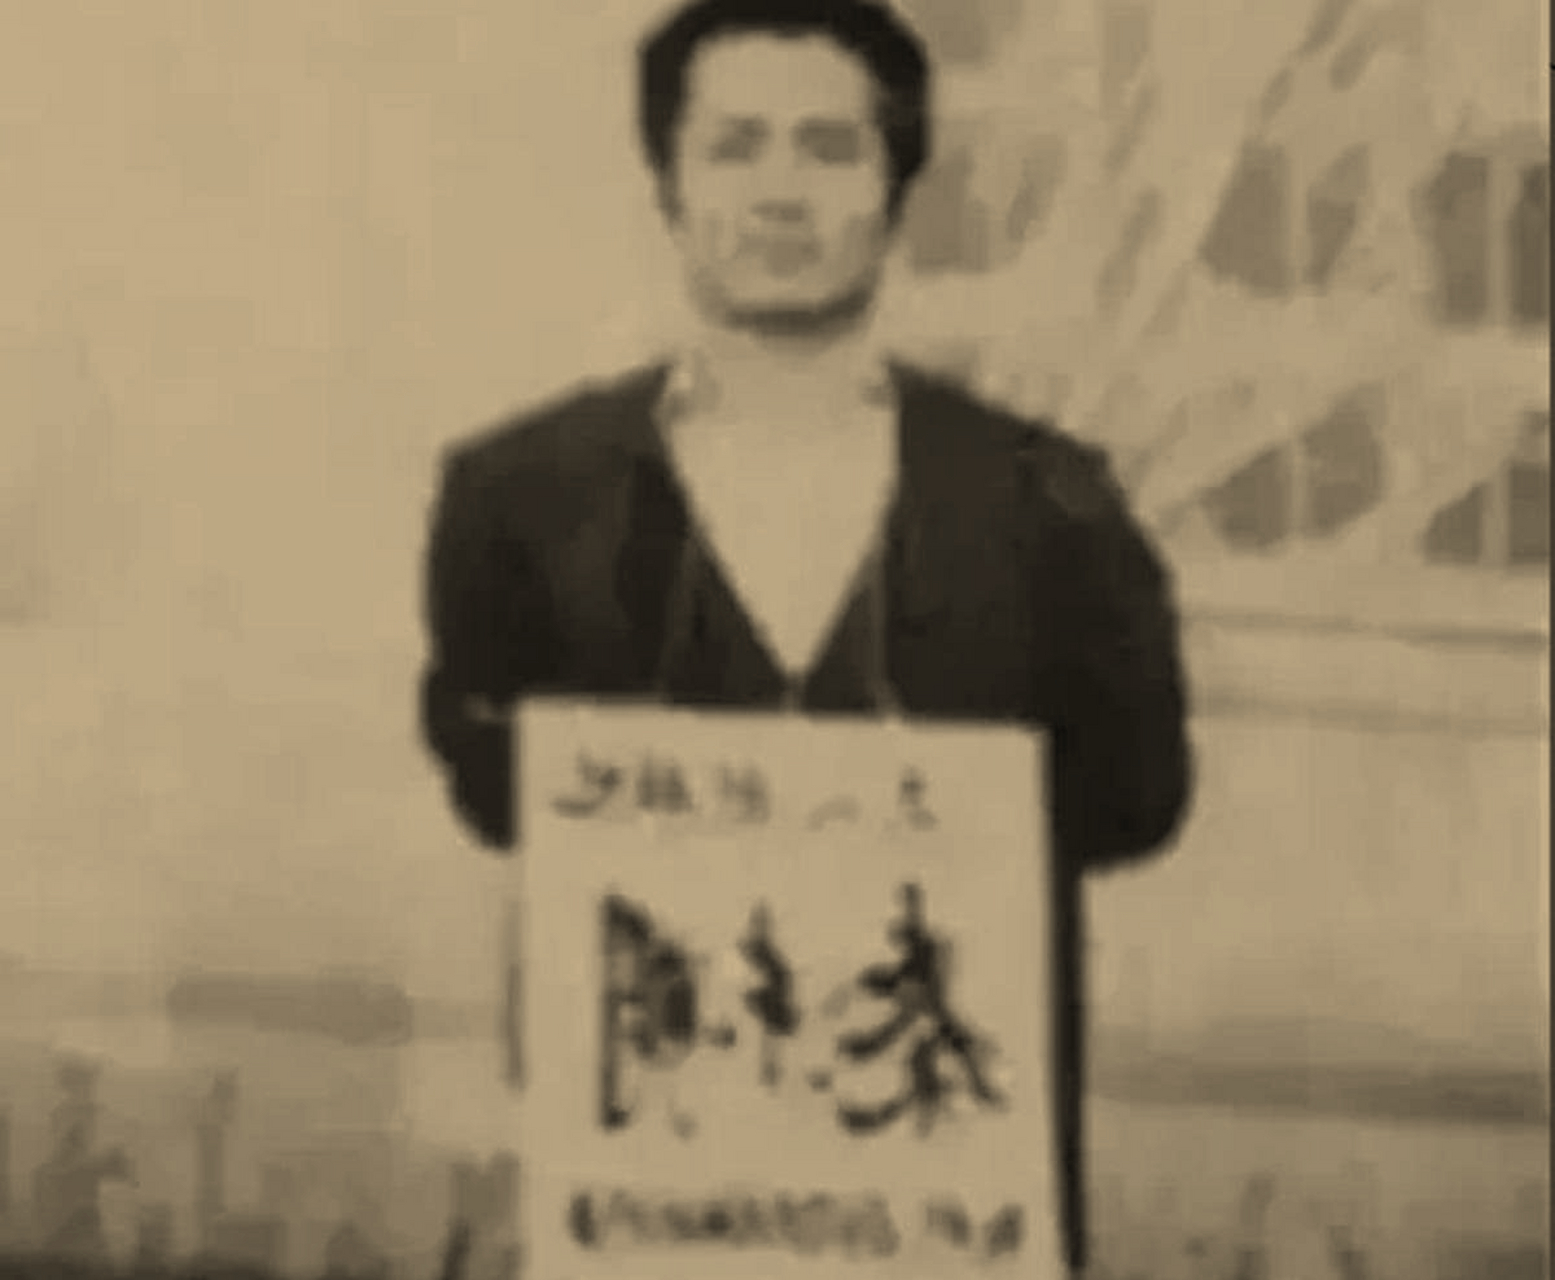 1994年,东北的一个刑场上,死刑犯秦东明即将被执行枪决,他是个很花心